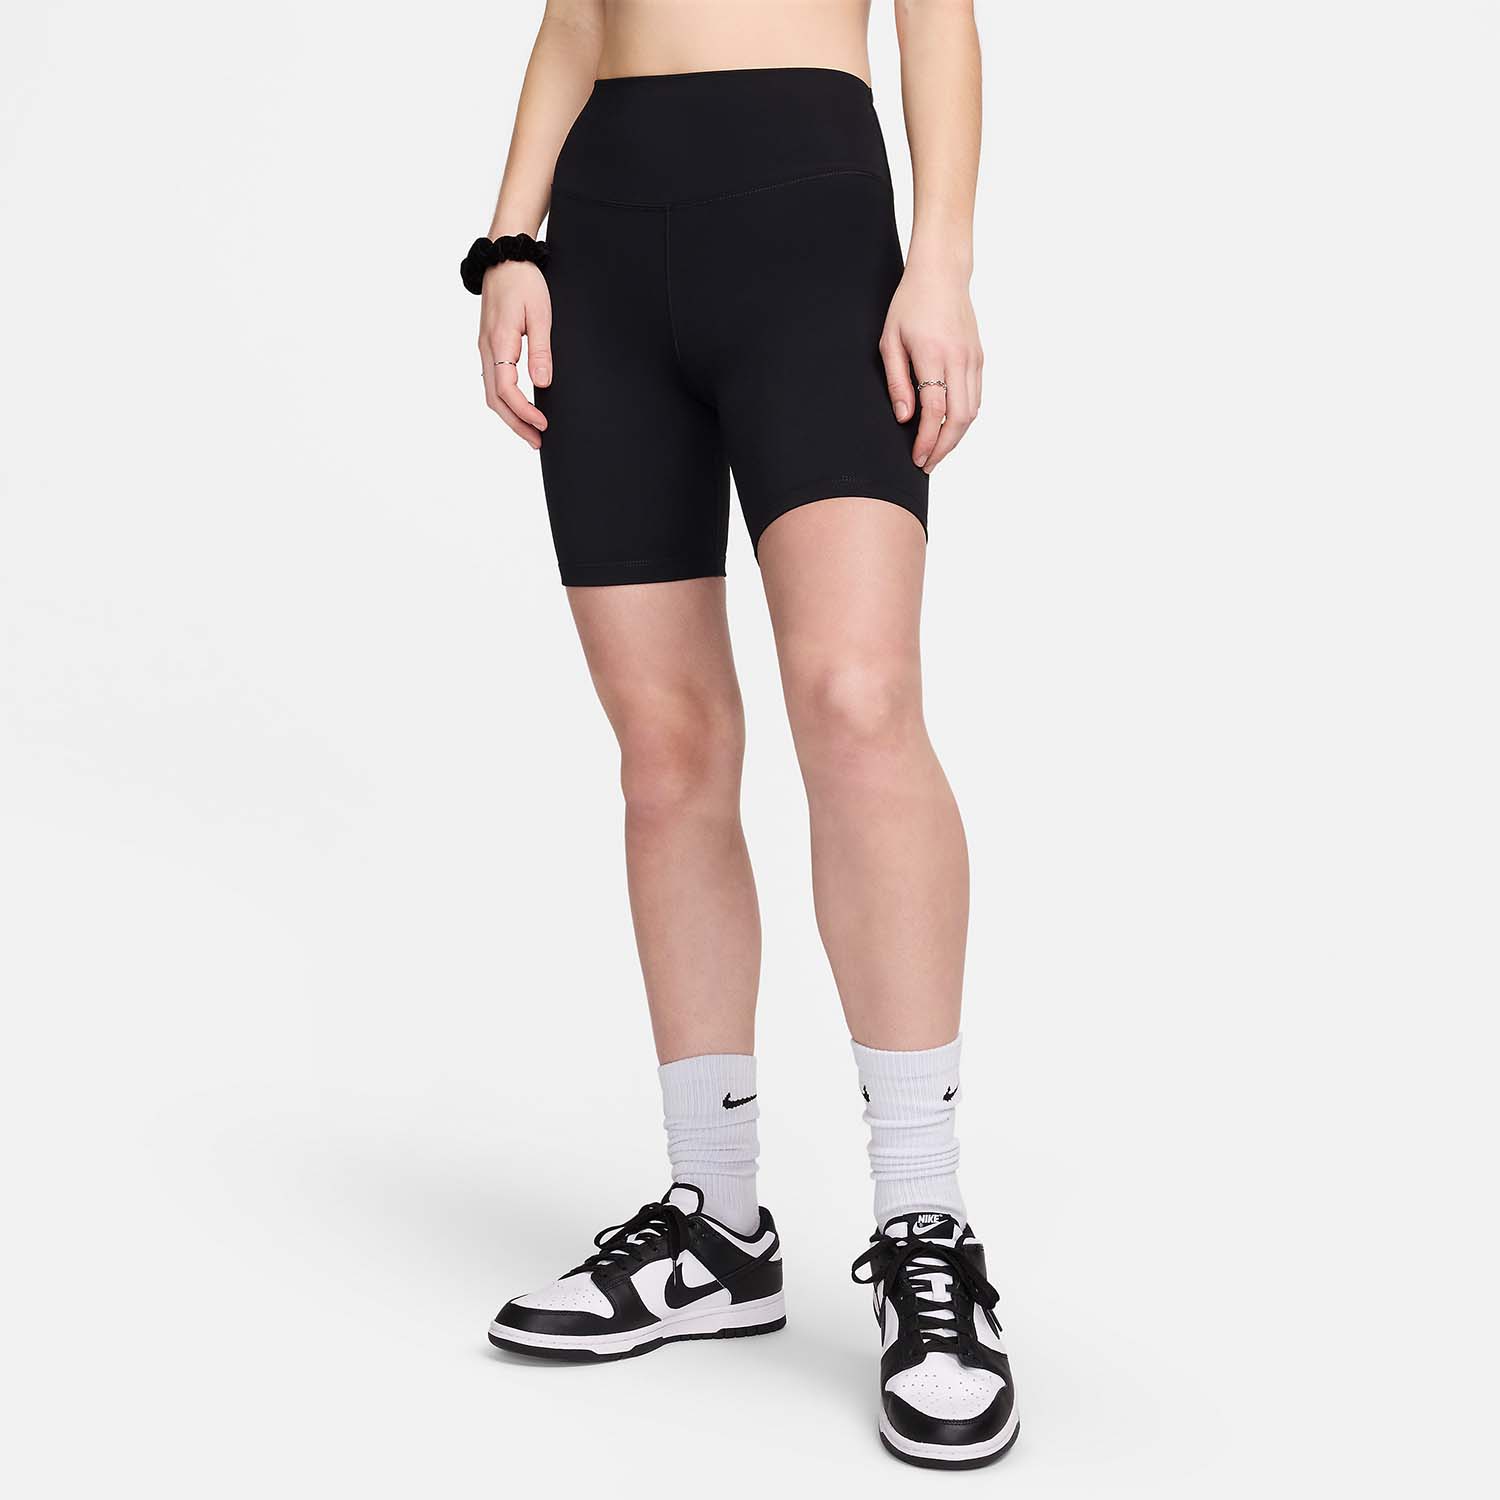 Nike One 8in Shorts - Black